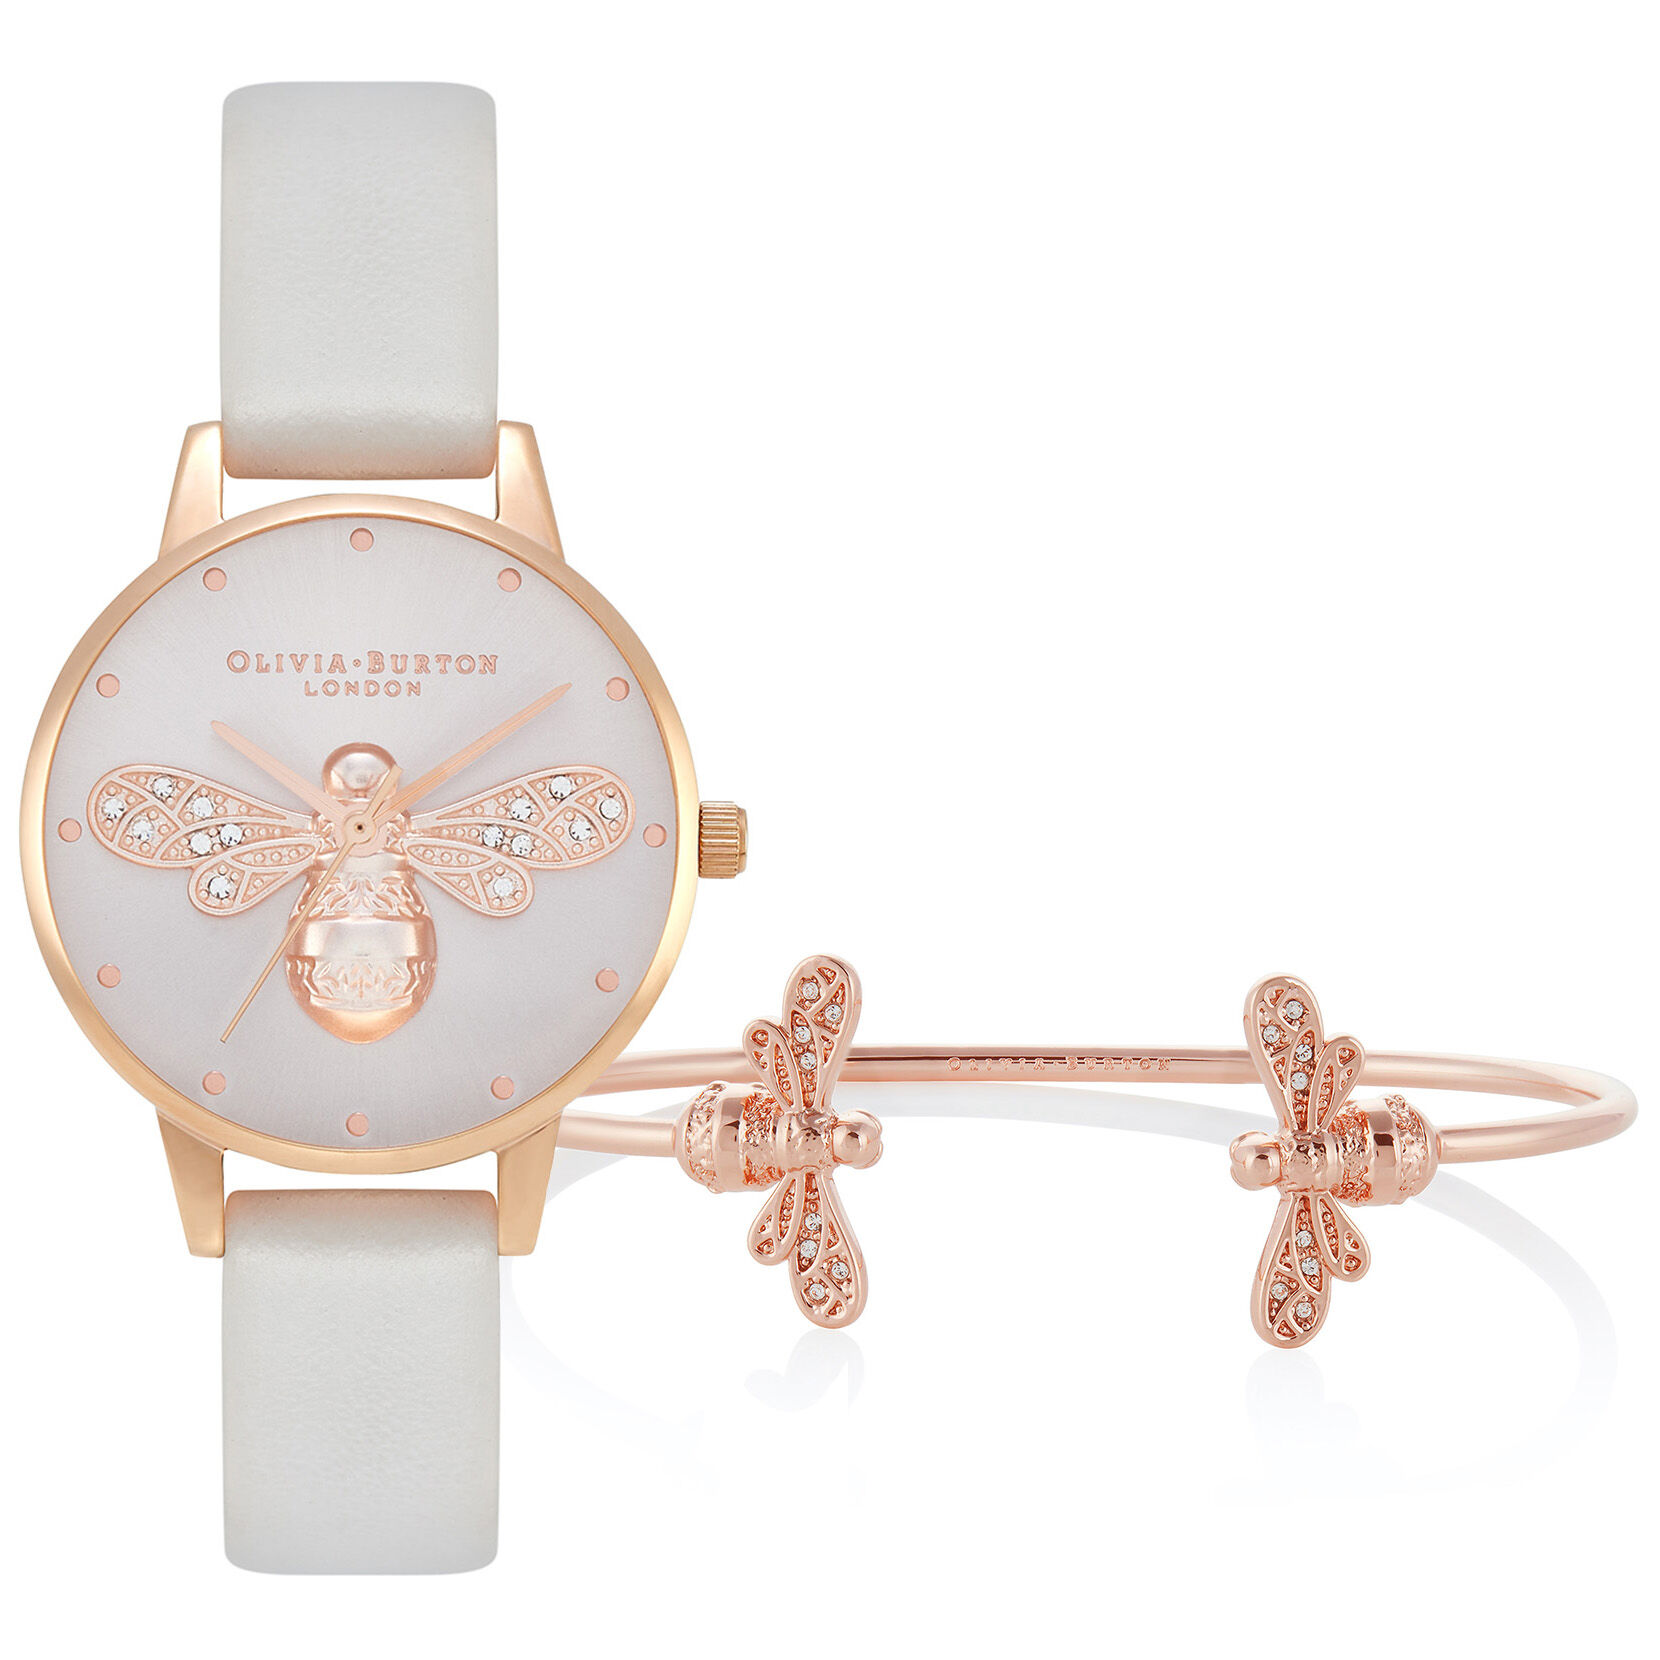 Coffret cadeau montre Sparkle Bee à cadran Midi et bracelet jonc or rose